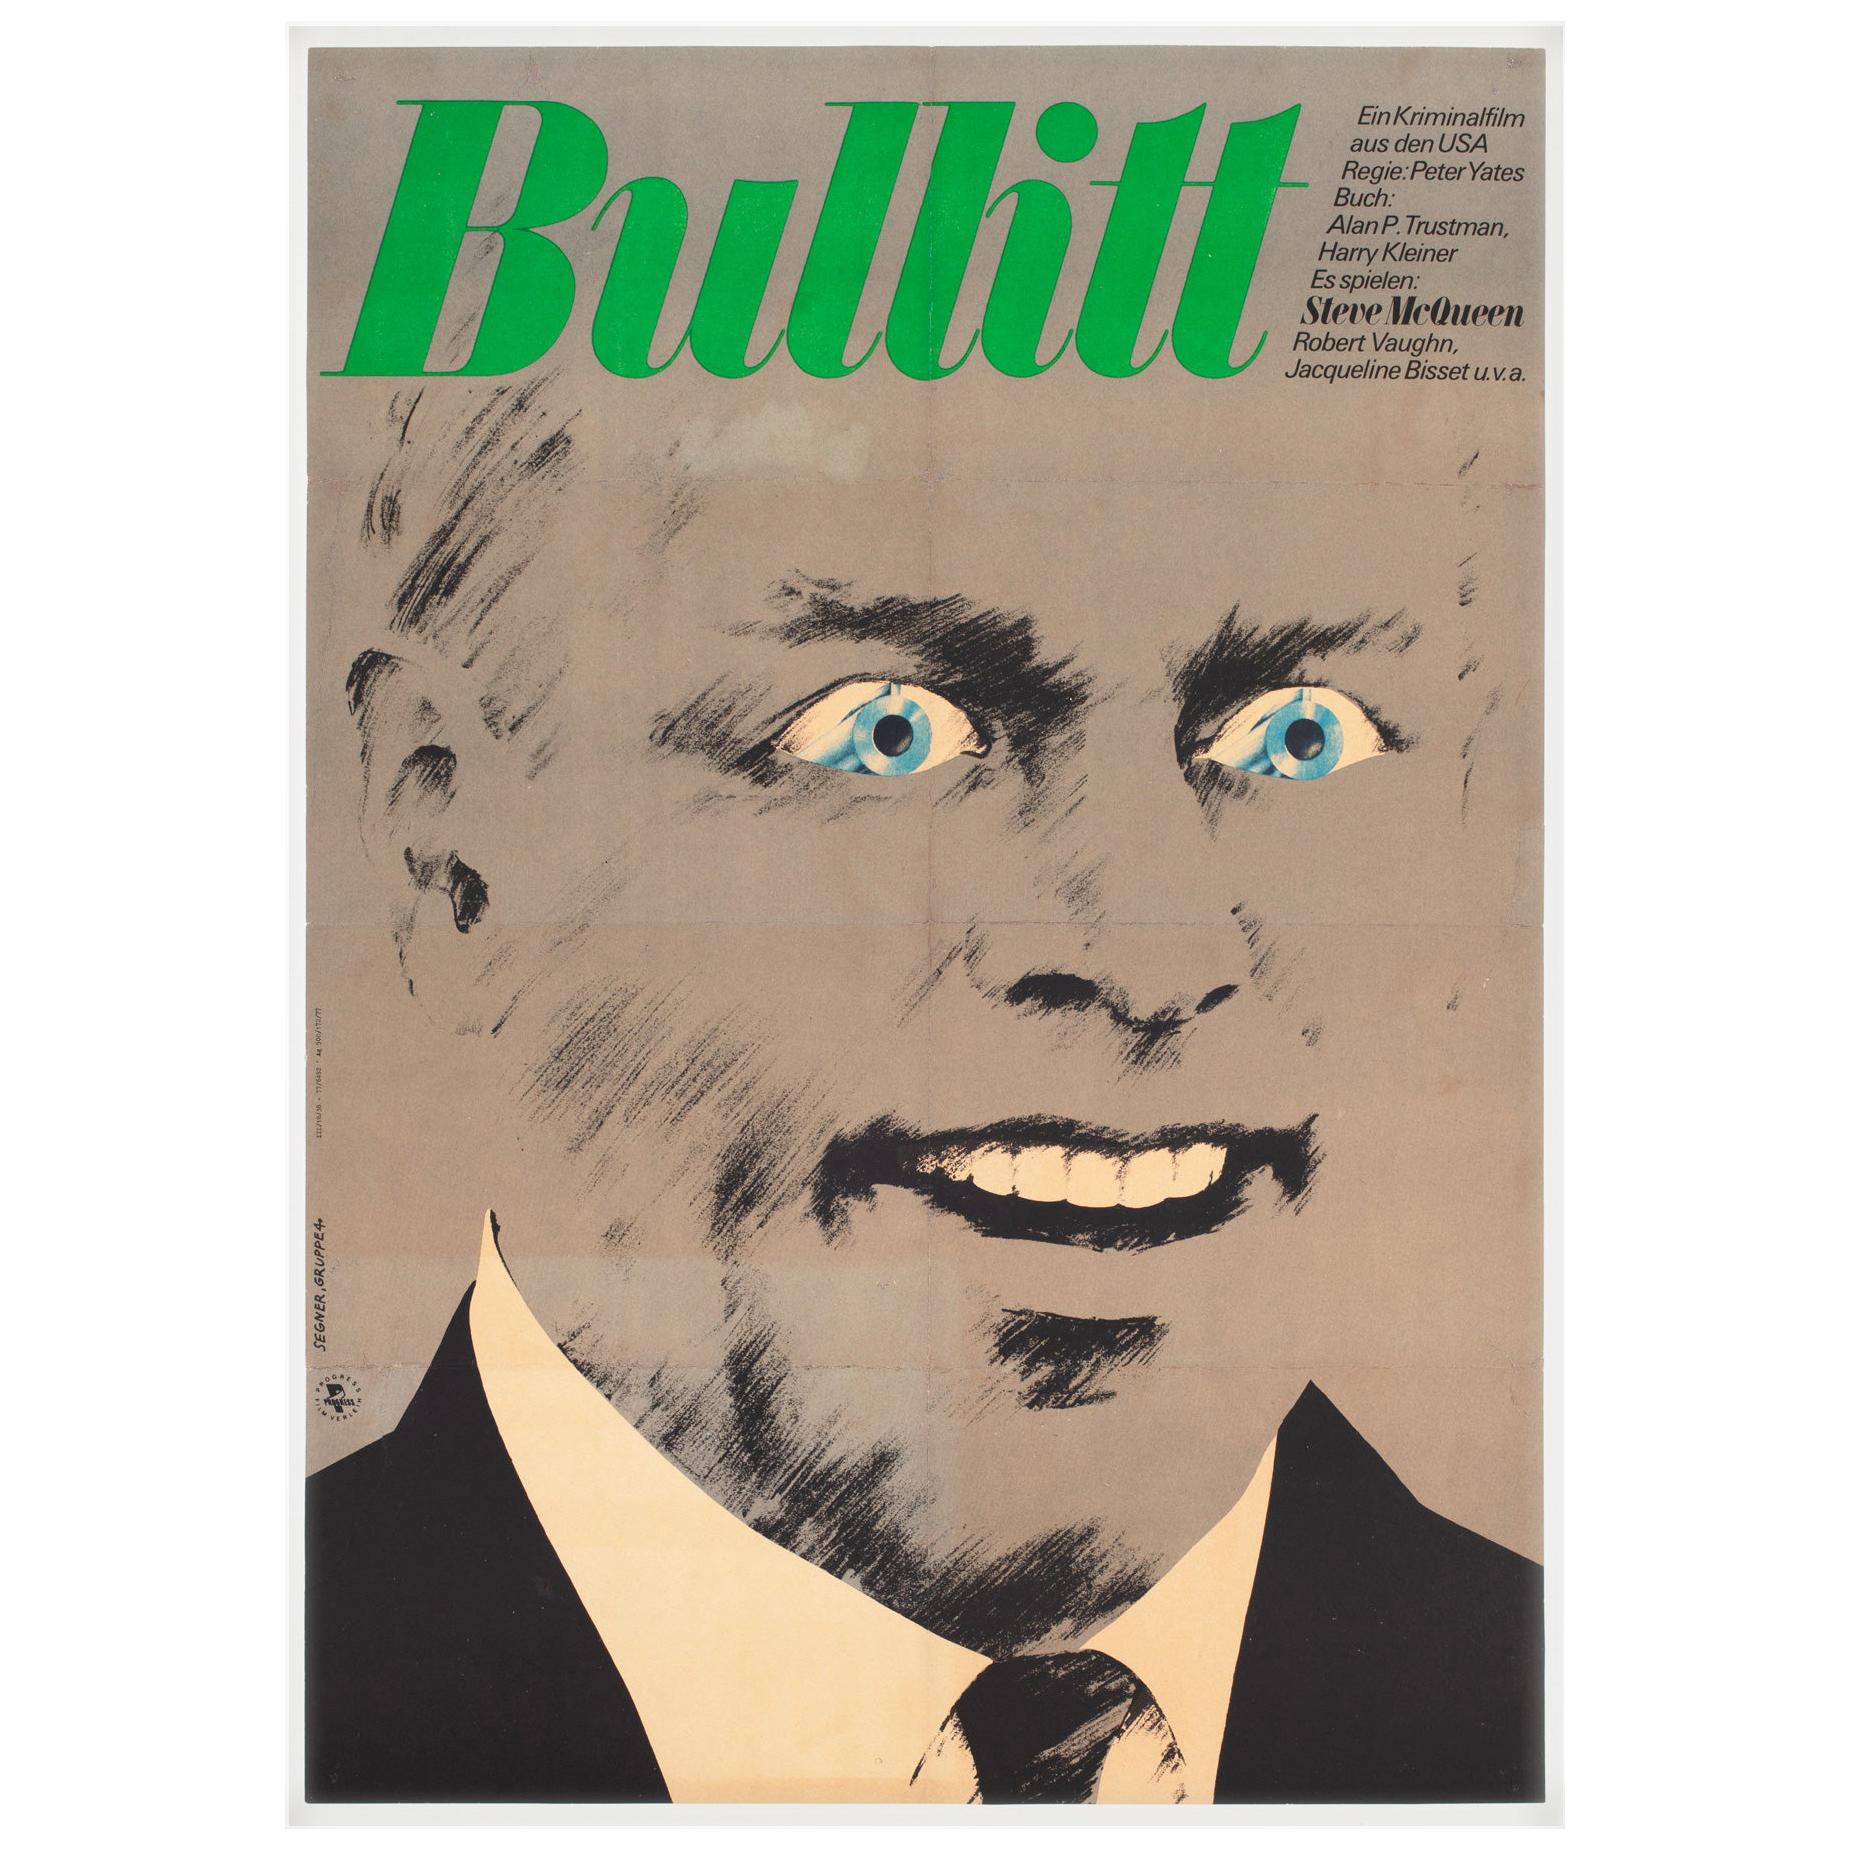 Bullitt 1977 East German Film Movie Poster, Segner, Linen Backed